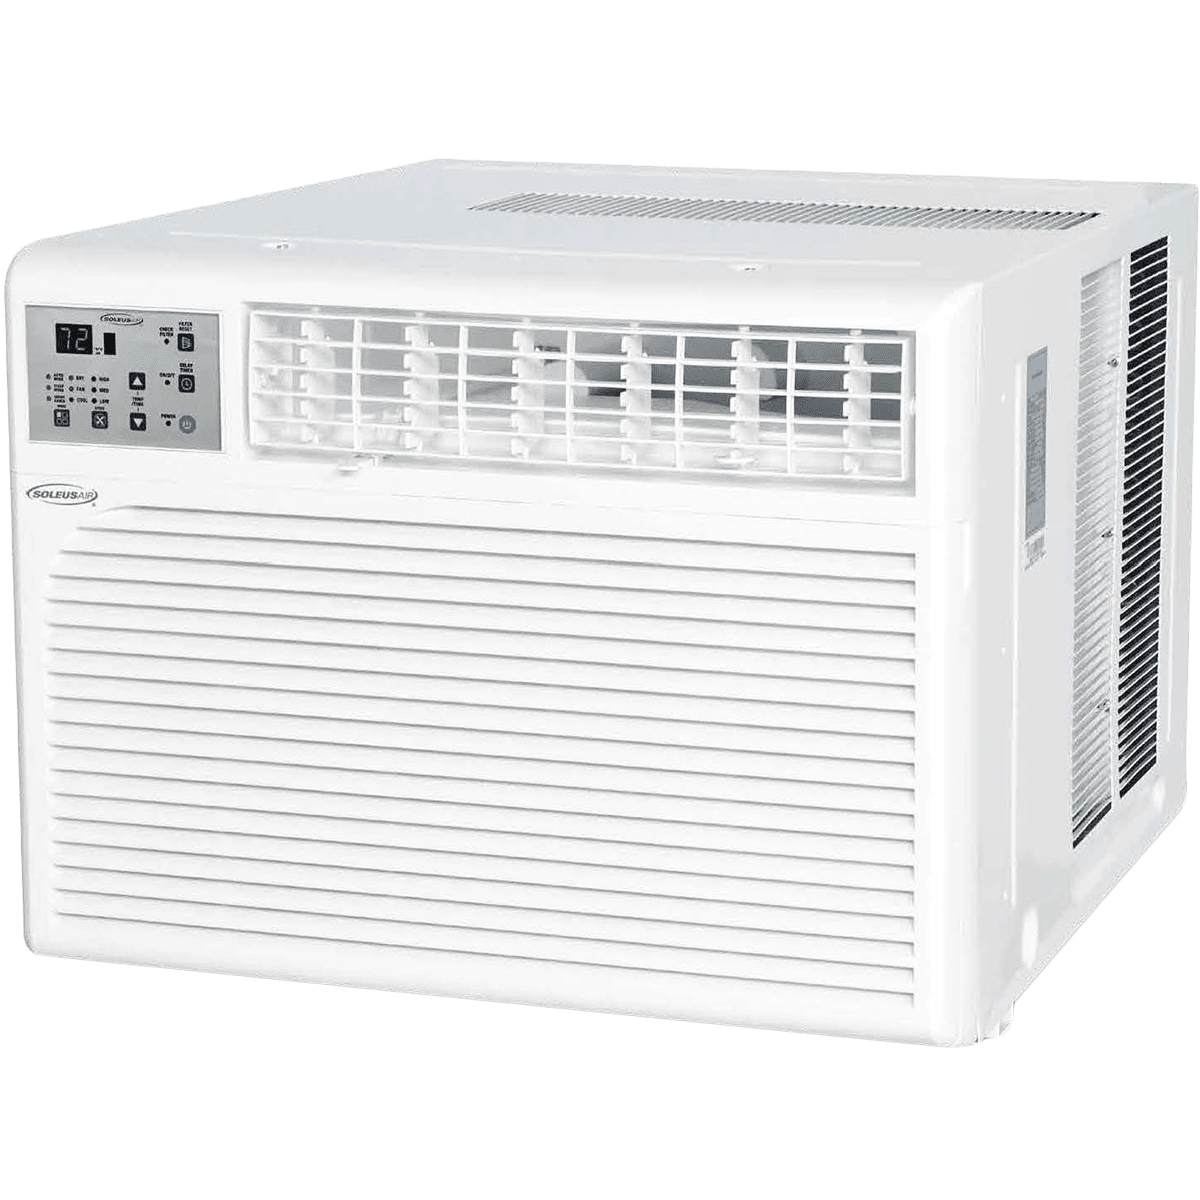 Soleus Air 24,700 Btu Window Air Conditioner (ws-24e-01)